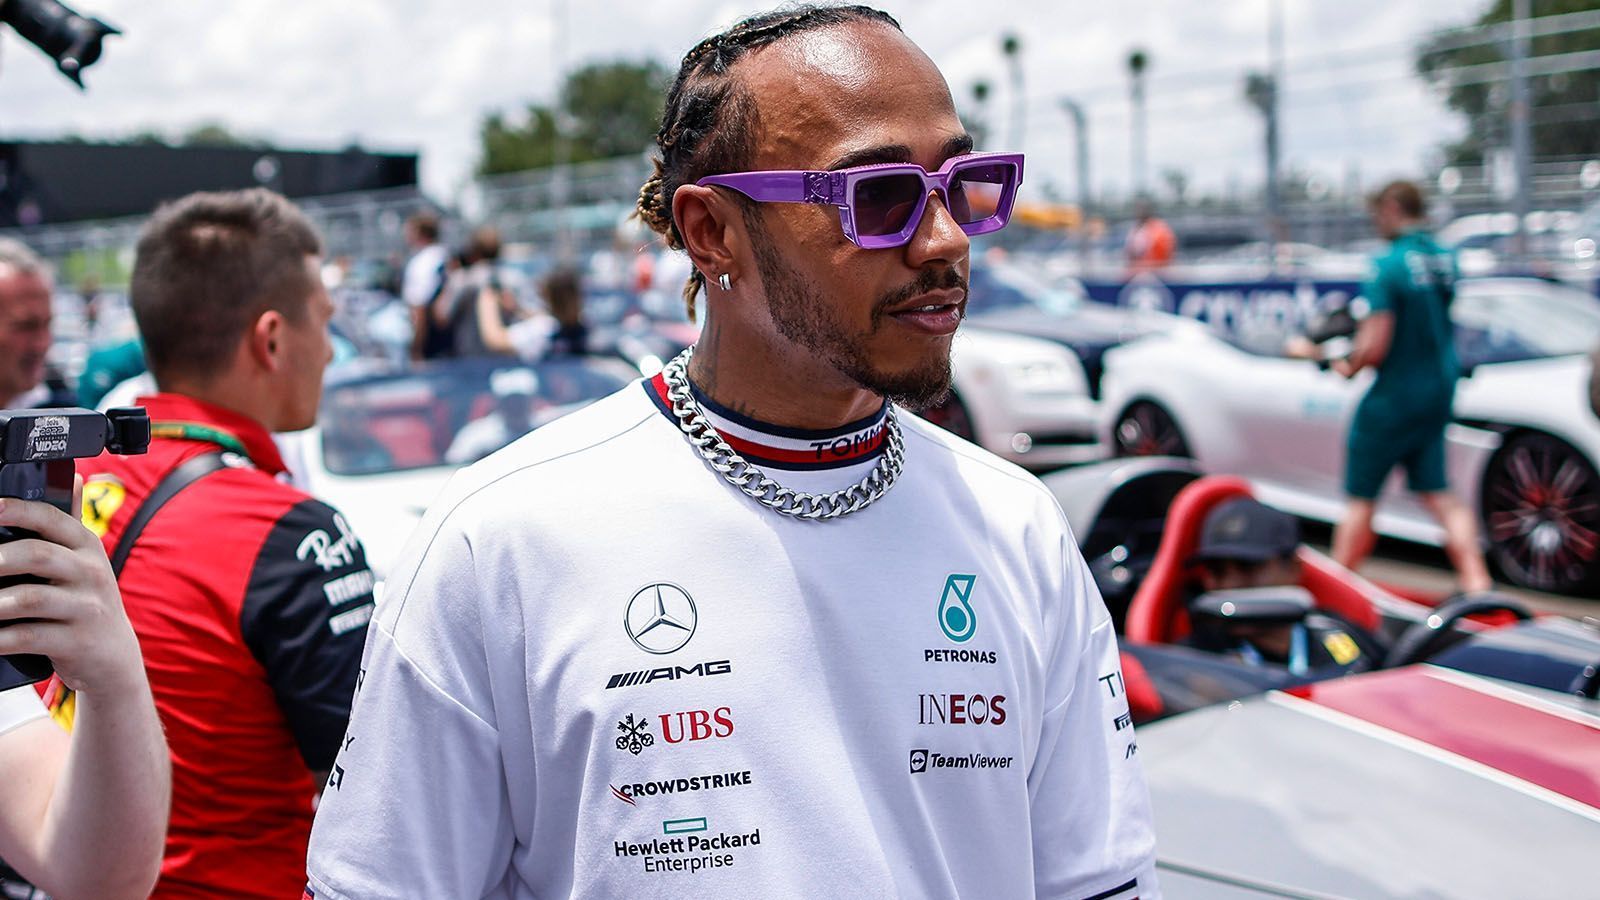 
                <strong>Lewis Hamilton (Mercedes)</strong><br>
                Der siebenmalige Weltmeister erlebte einen absoluten Horrorstart in die Saison. Zwar sprang beim Auftakt in Bahrain ein dritter Platz heraus, dieser war allerdings nur durch die Ausfälle der Red-Bull-Fahrer möglich. In den kommenden Rennen gelang dem Briten nicht mehr viel. Ein vierter Platz in Australien muss in dieser Saison schon als Erfolg gelten. Mit dem Titel wird Hamilton in diesem Jahr nichts zu tun haben. Eher muss er aufpassen, dass ihm sein Teamkollege nicht enteilt. ran-Note nach fünf Rennen: 
              